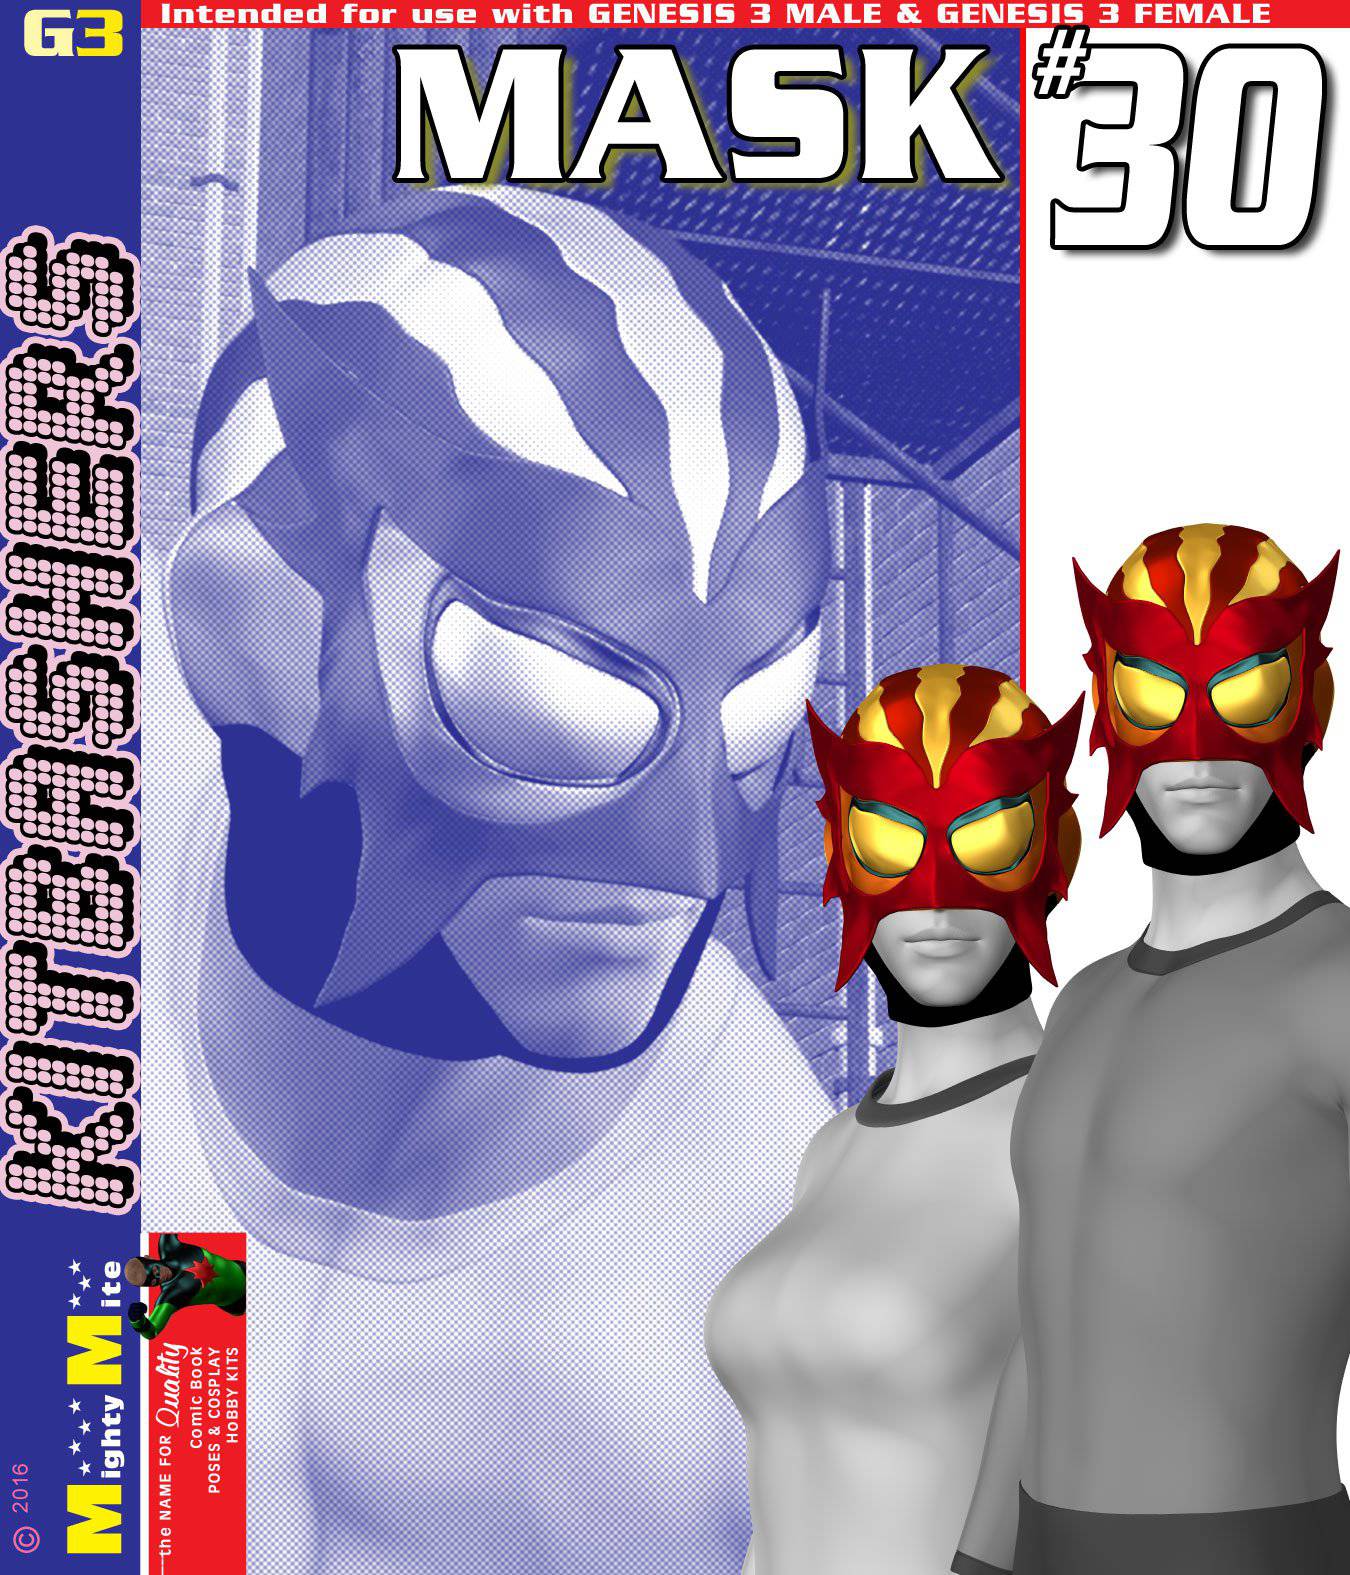 Mask 030 MMKBG3_DAZ3D下载站